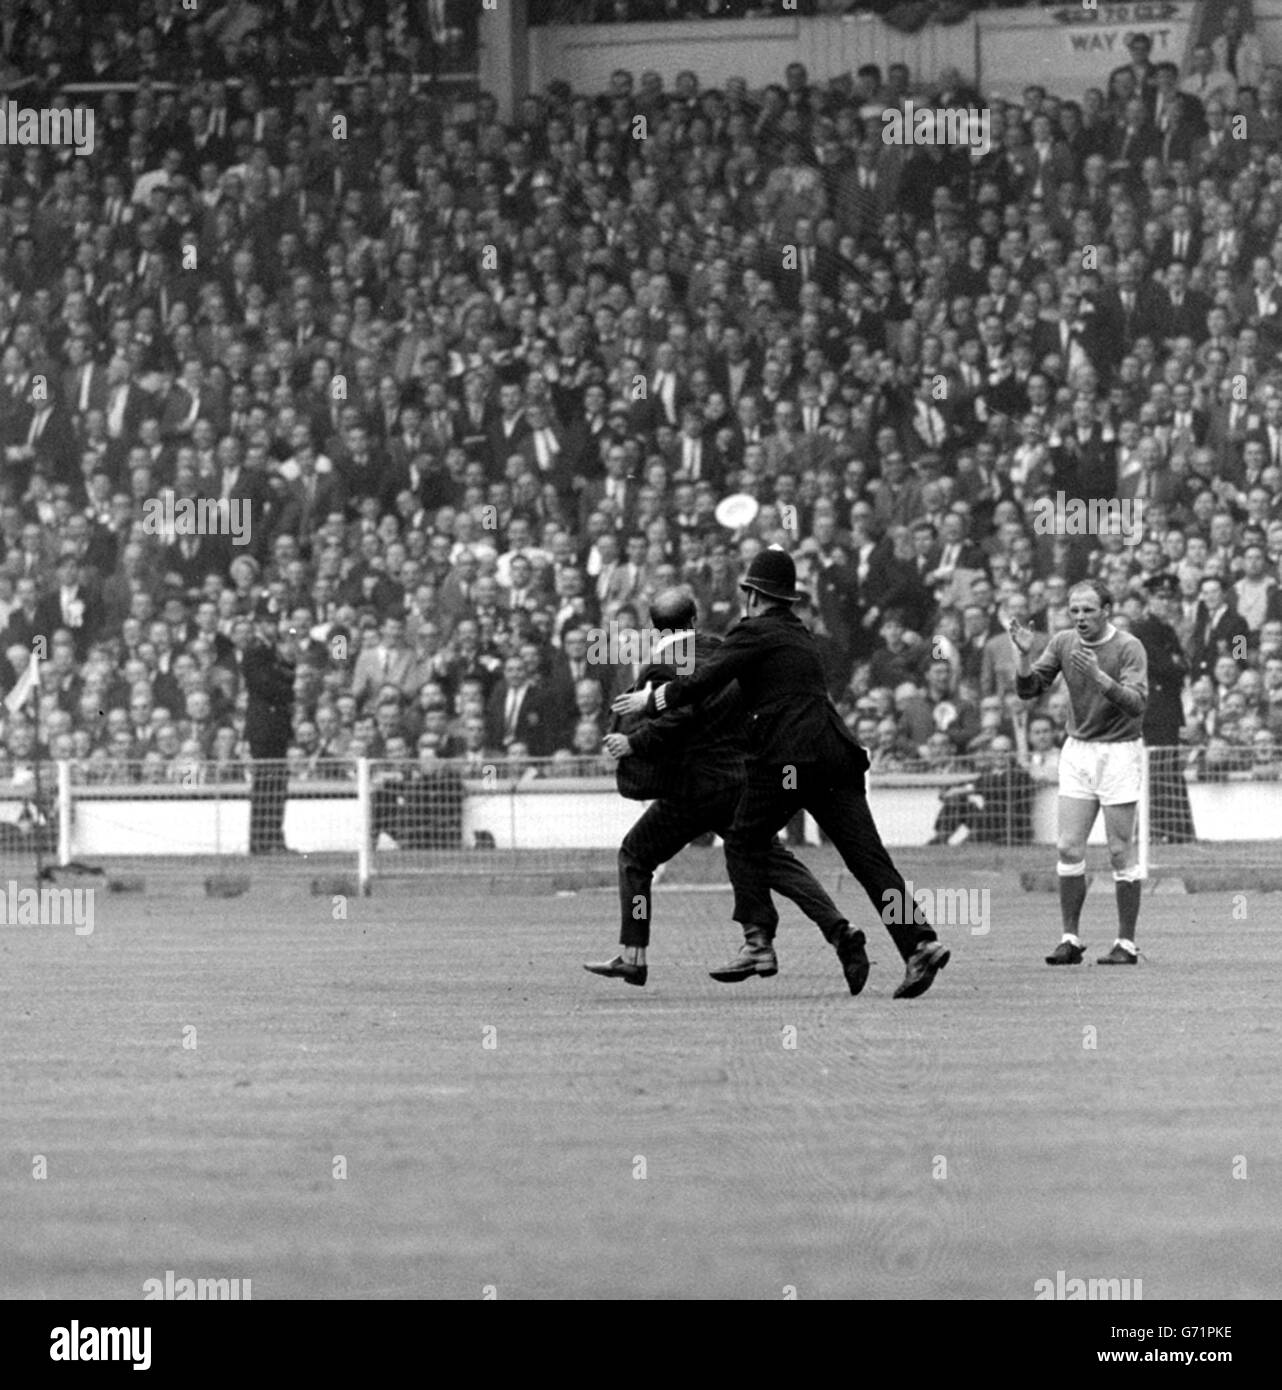 Es war ein Moment der wahnsinnigen Begeisterung während des FA Cup Finales in Wembley. Nachdem der Everton-Held Trebilcock sein zweites Tor erzielte, stürzte dieser Unterstützer auf das Feld und musste von der Polizei entfernt werden, beobachtet von Evertons Ray Wilson (rechts). Stockfoto